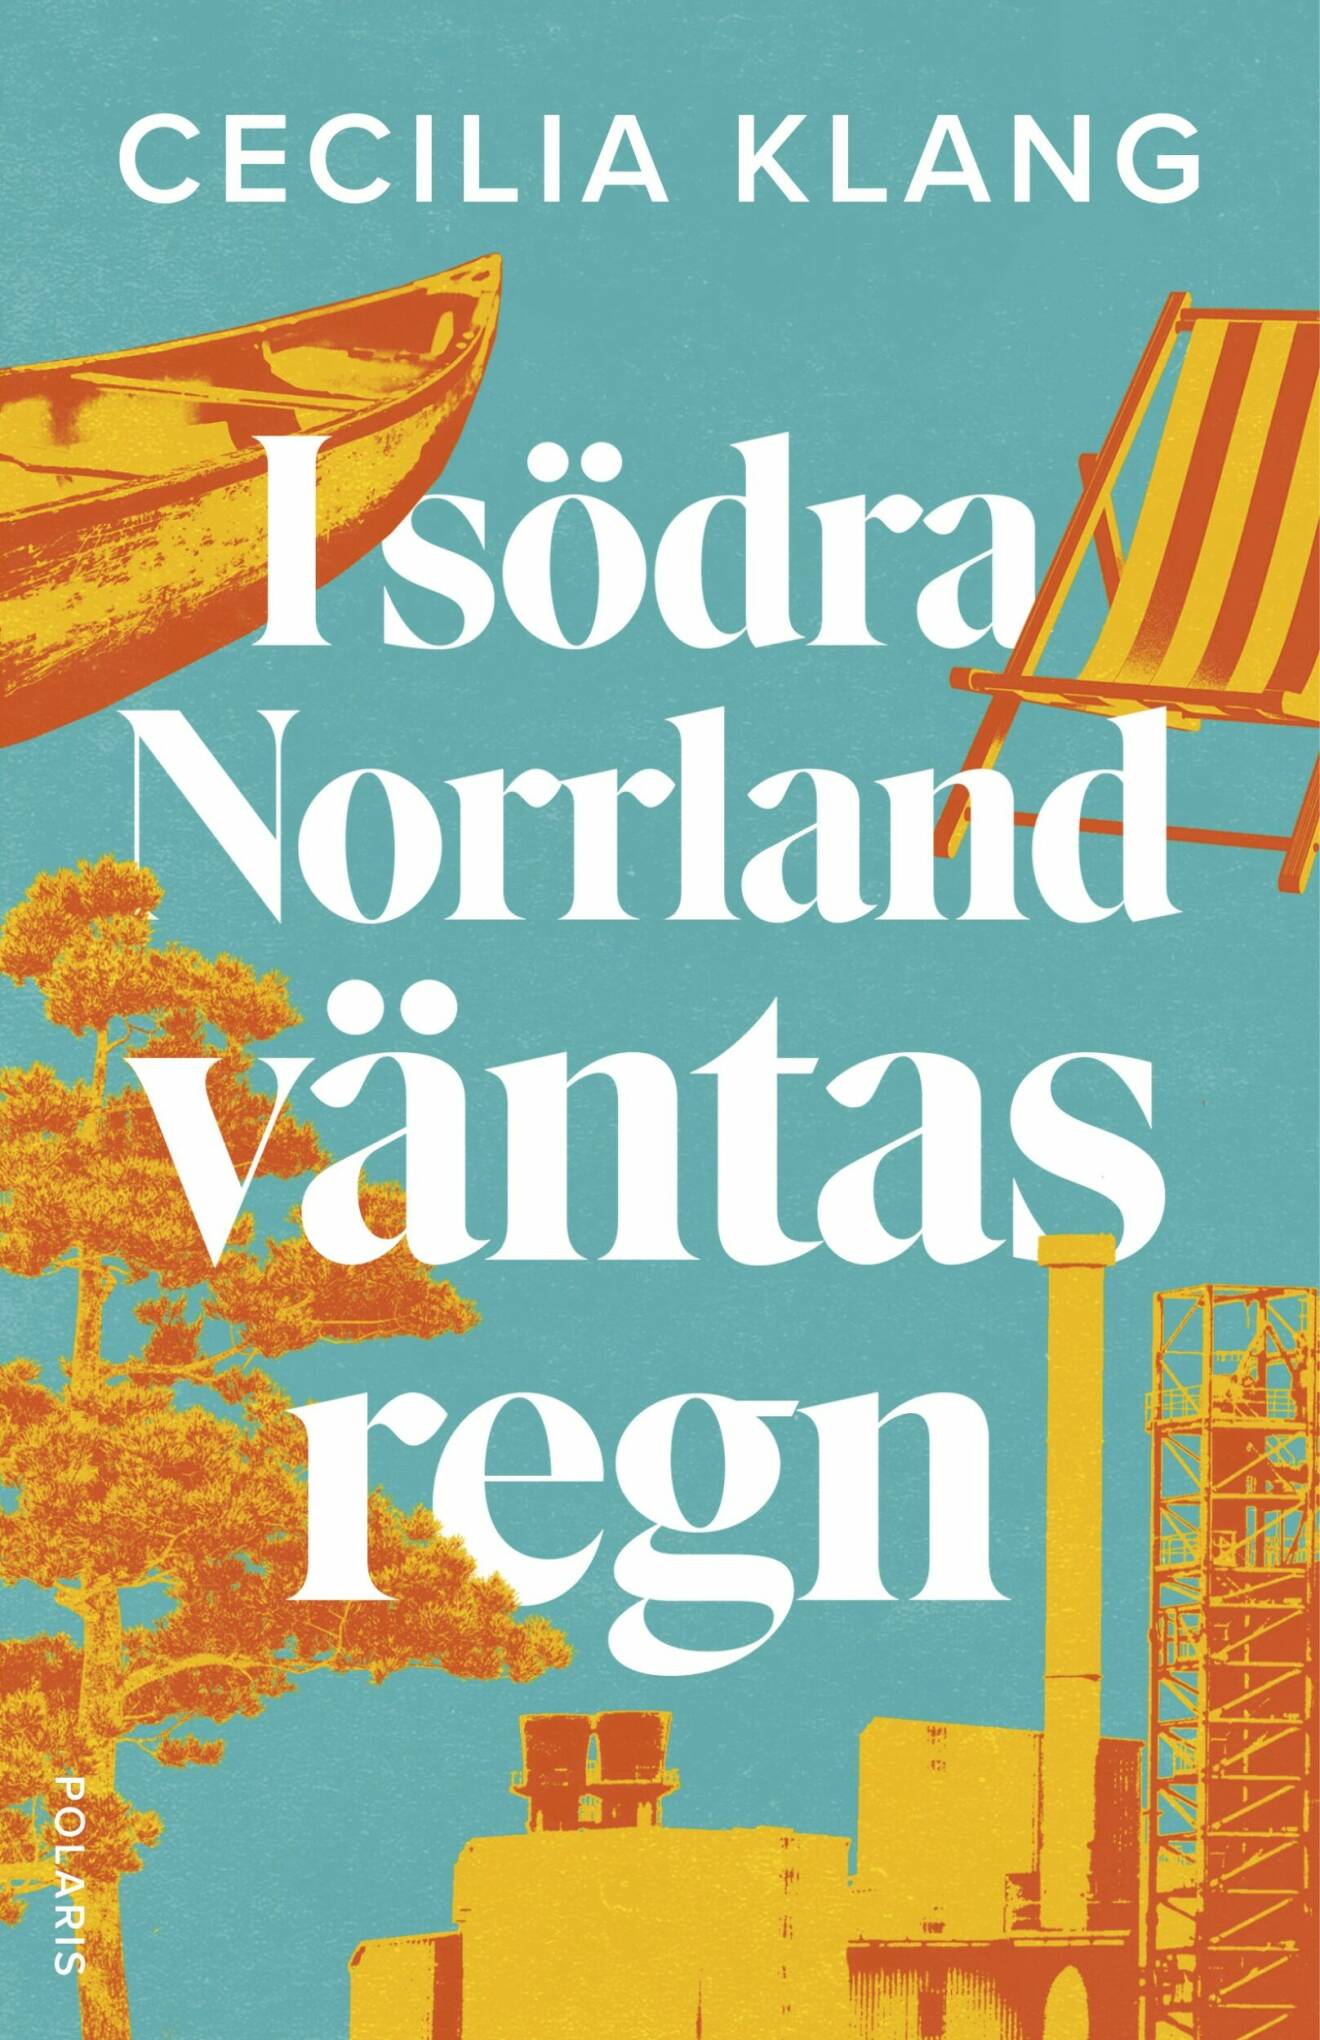 Cecilia Klang är författare till boken I södra Norrland väntas regn.